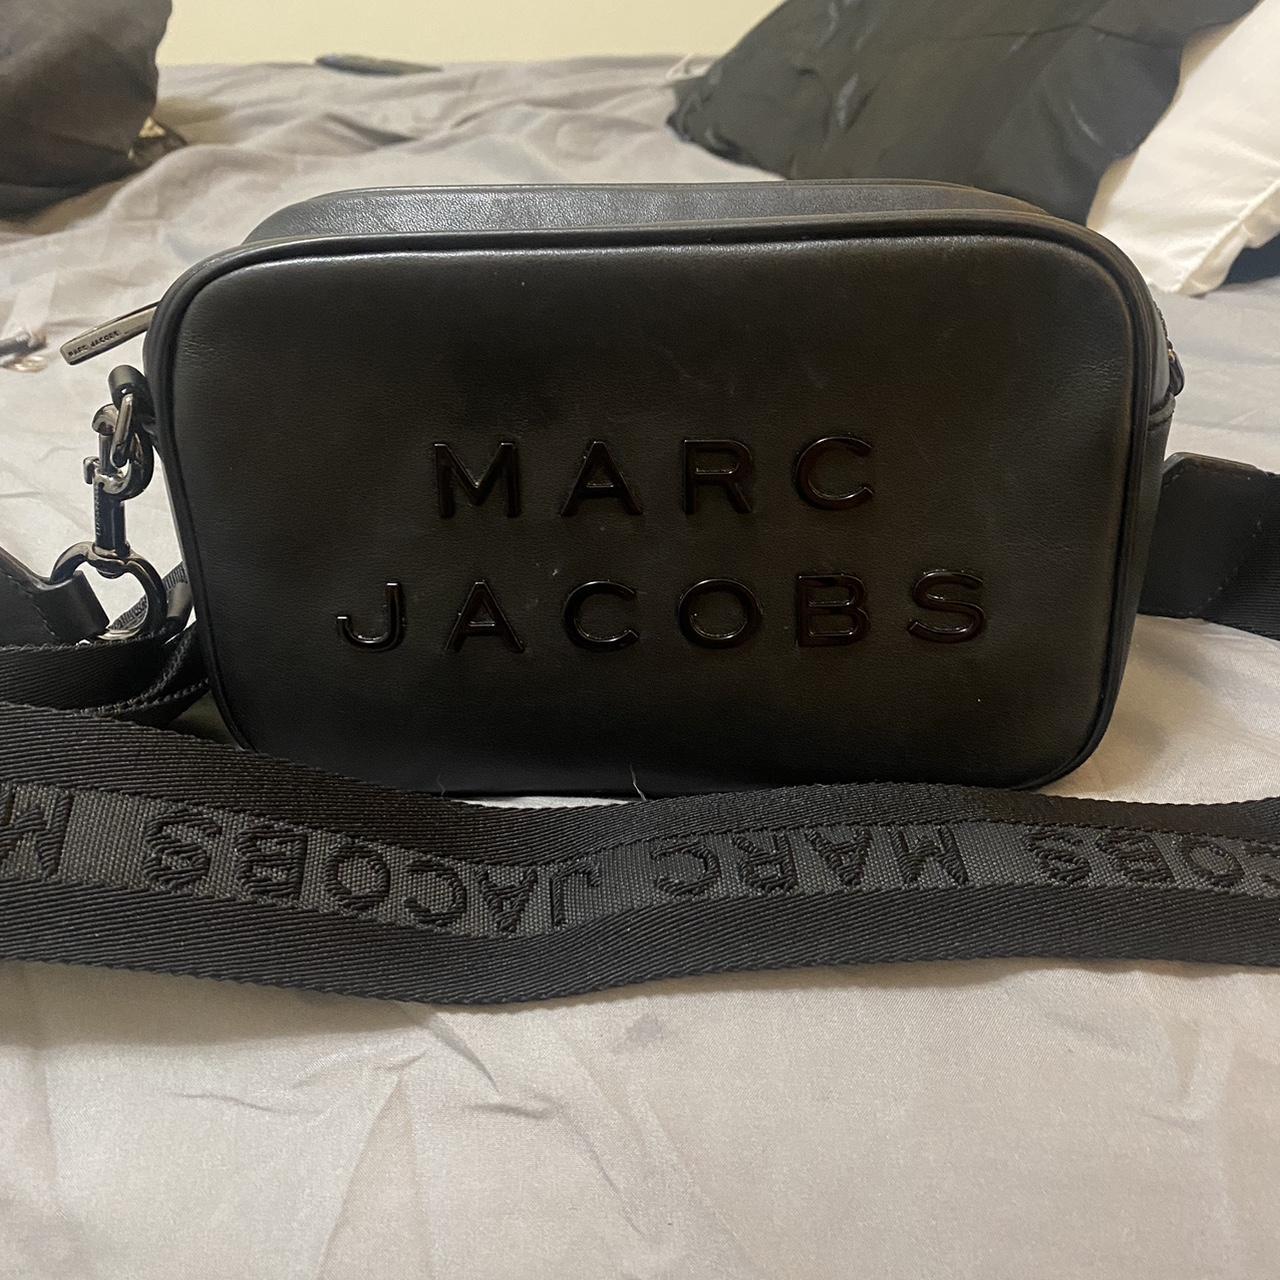 LOUIS VUITTON KALAHARI GM bag /Marc Jacobs - Depop